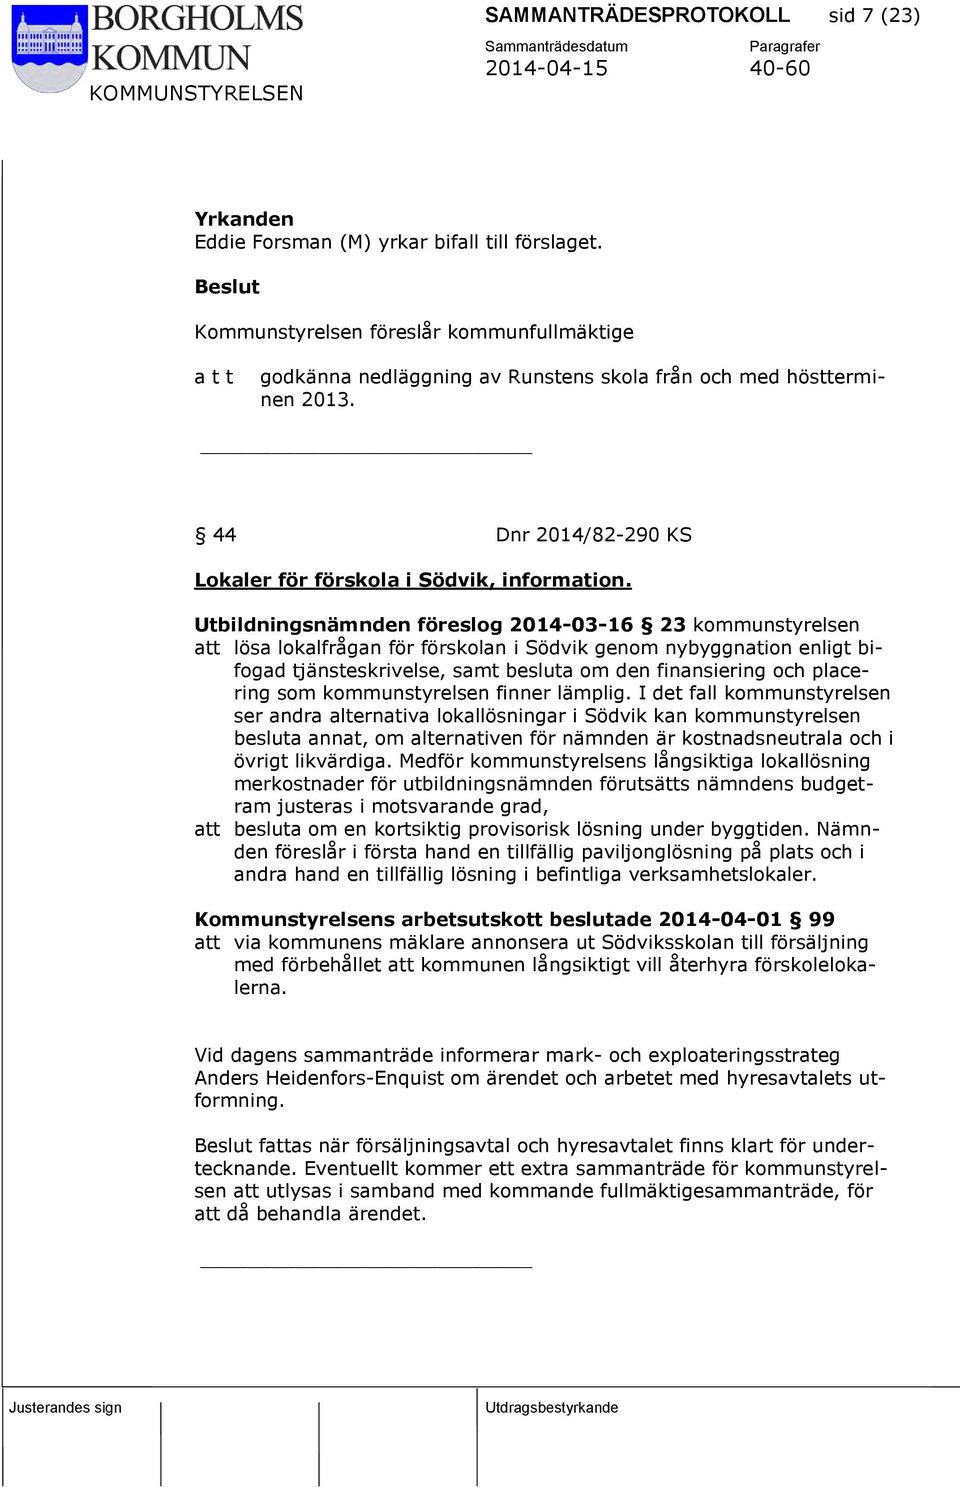 Utbildningsnämnden föreslog 2014-03-16 23 kommunstyrelsen att lösa lokalfrågan för förskolan i Södvik genom nybyggnation enligt bifogad tjänsteskrivelse, samt besluta om den finansiering och